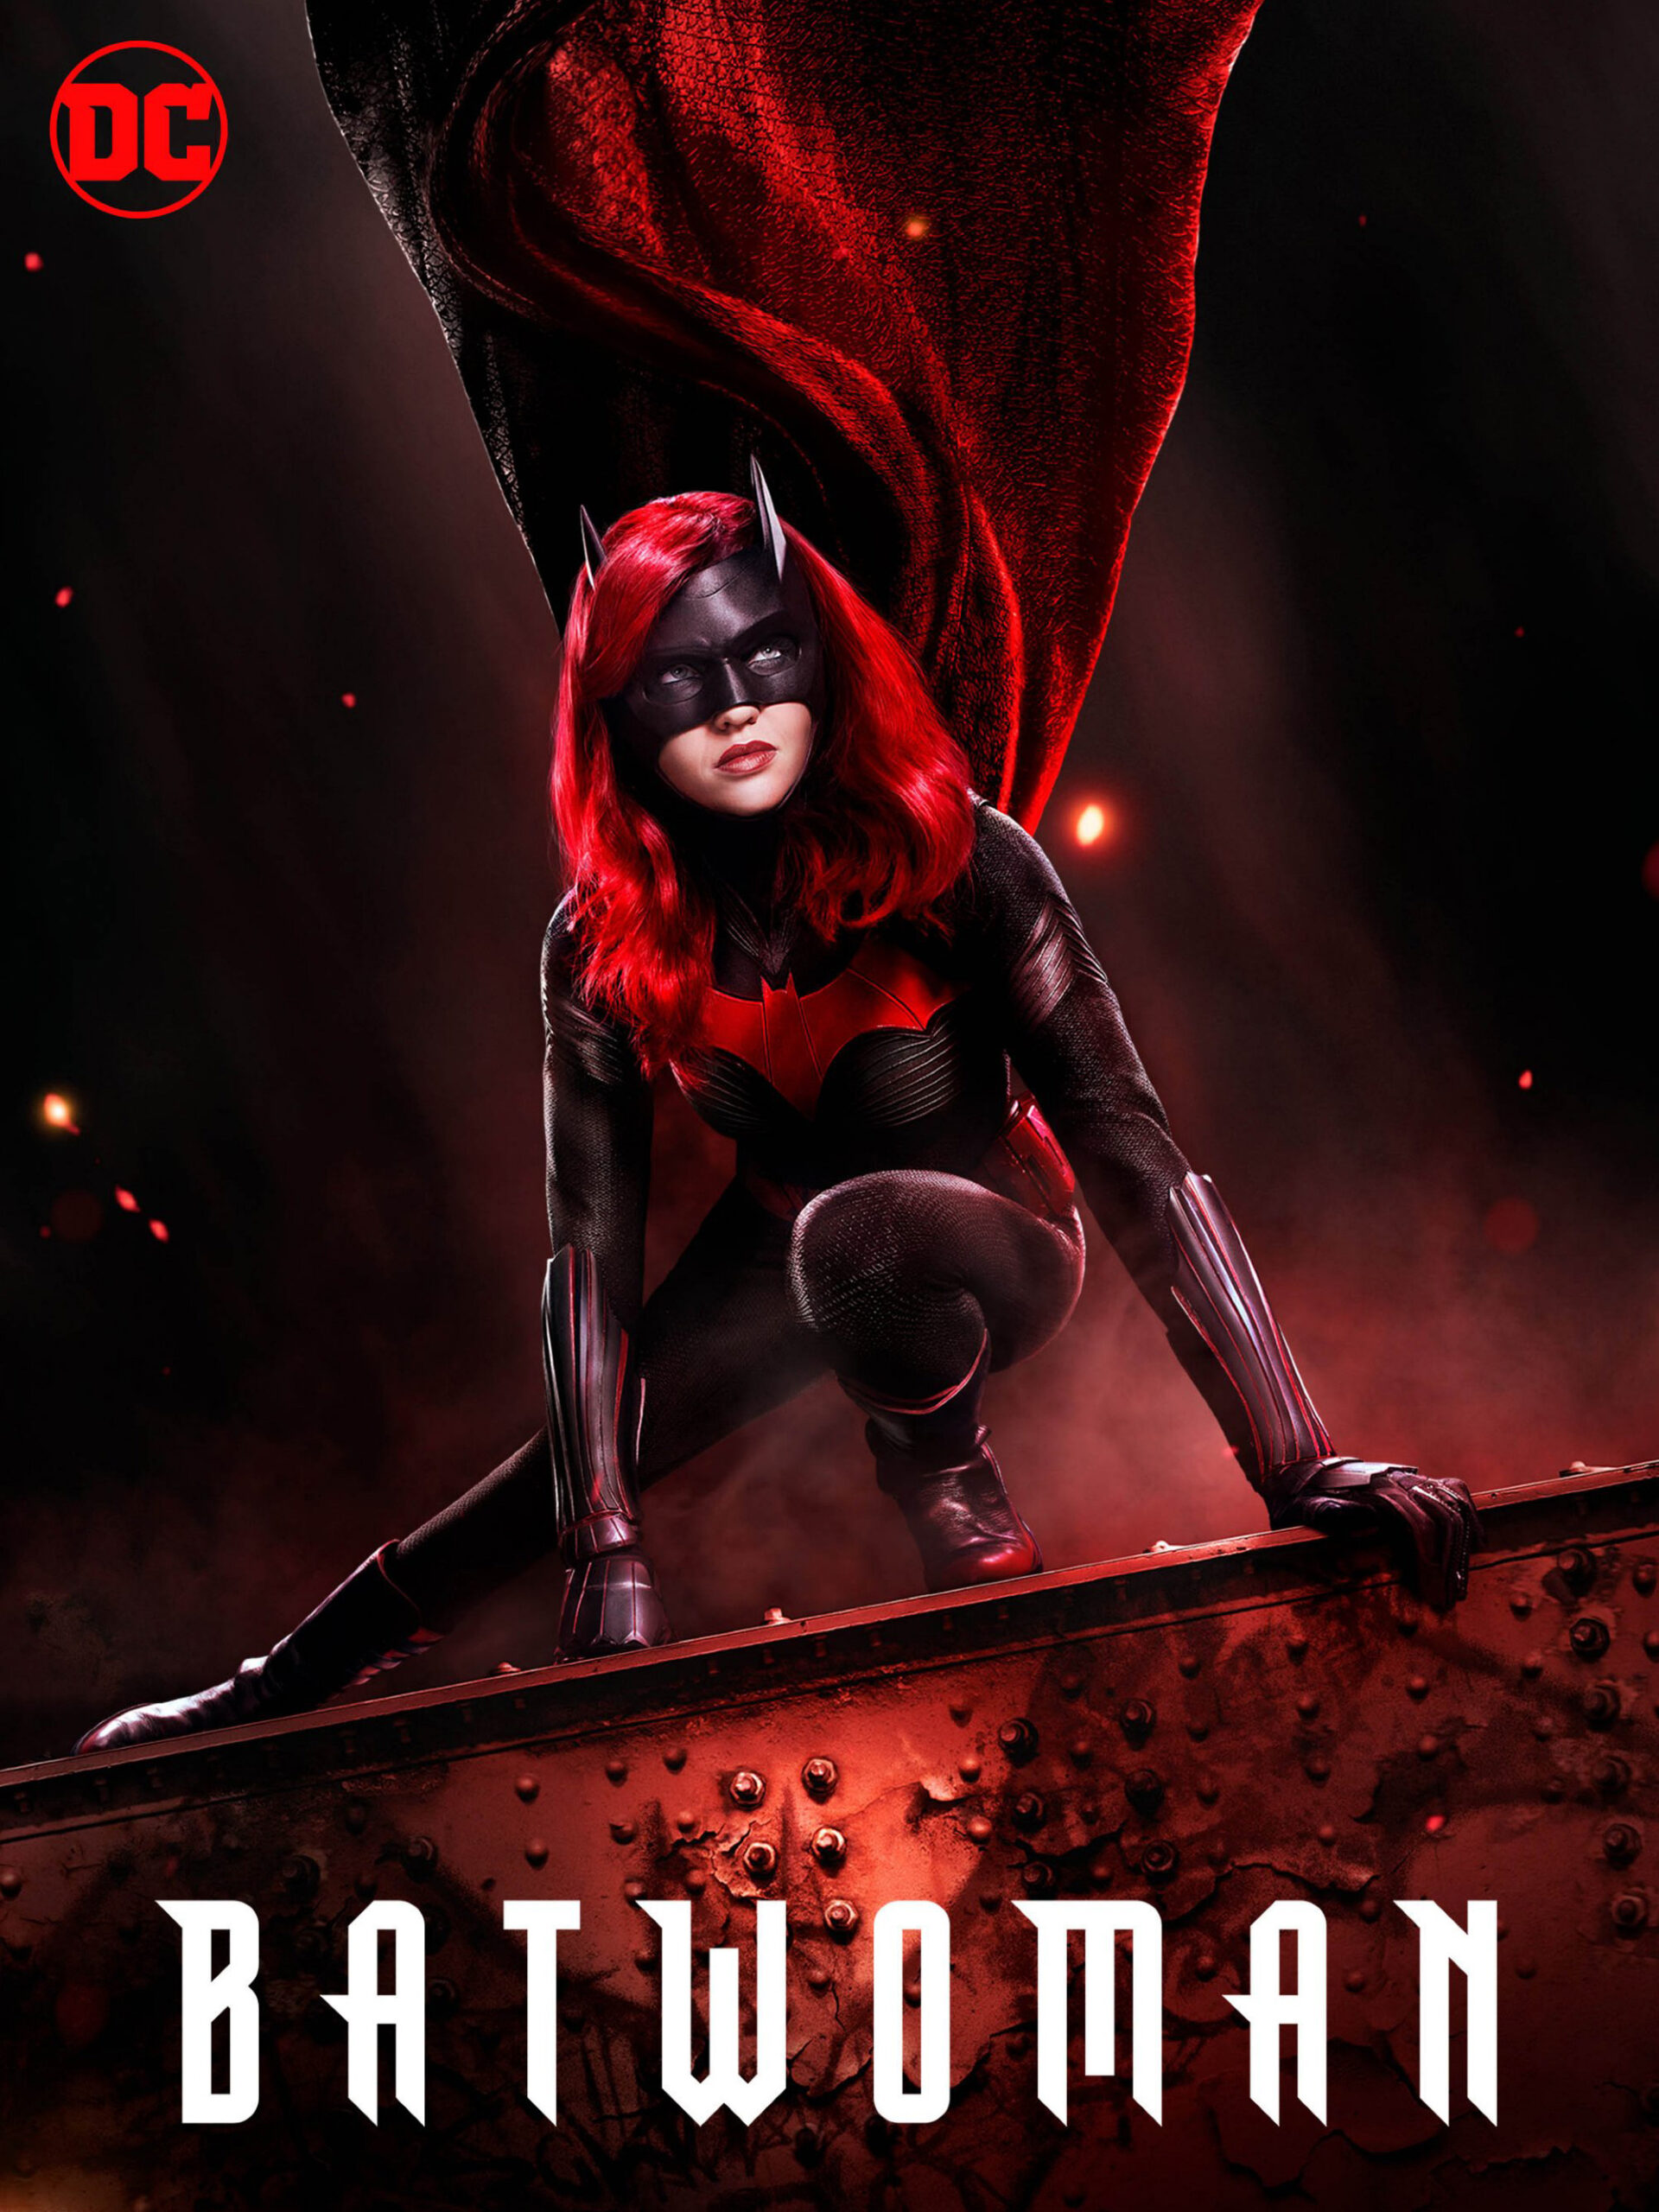 ดูหนังออนไลน์ฟรี Batwoman Season 1 (2019) EP.7 แบทวูแมน ซีซั่น 1 ตอนที่ 7 (Soundtrack)